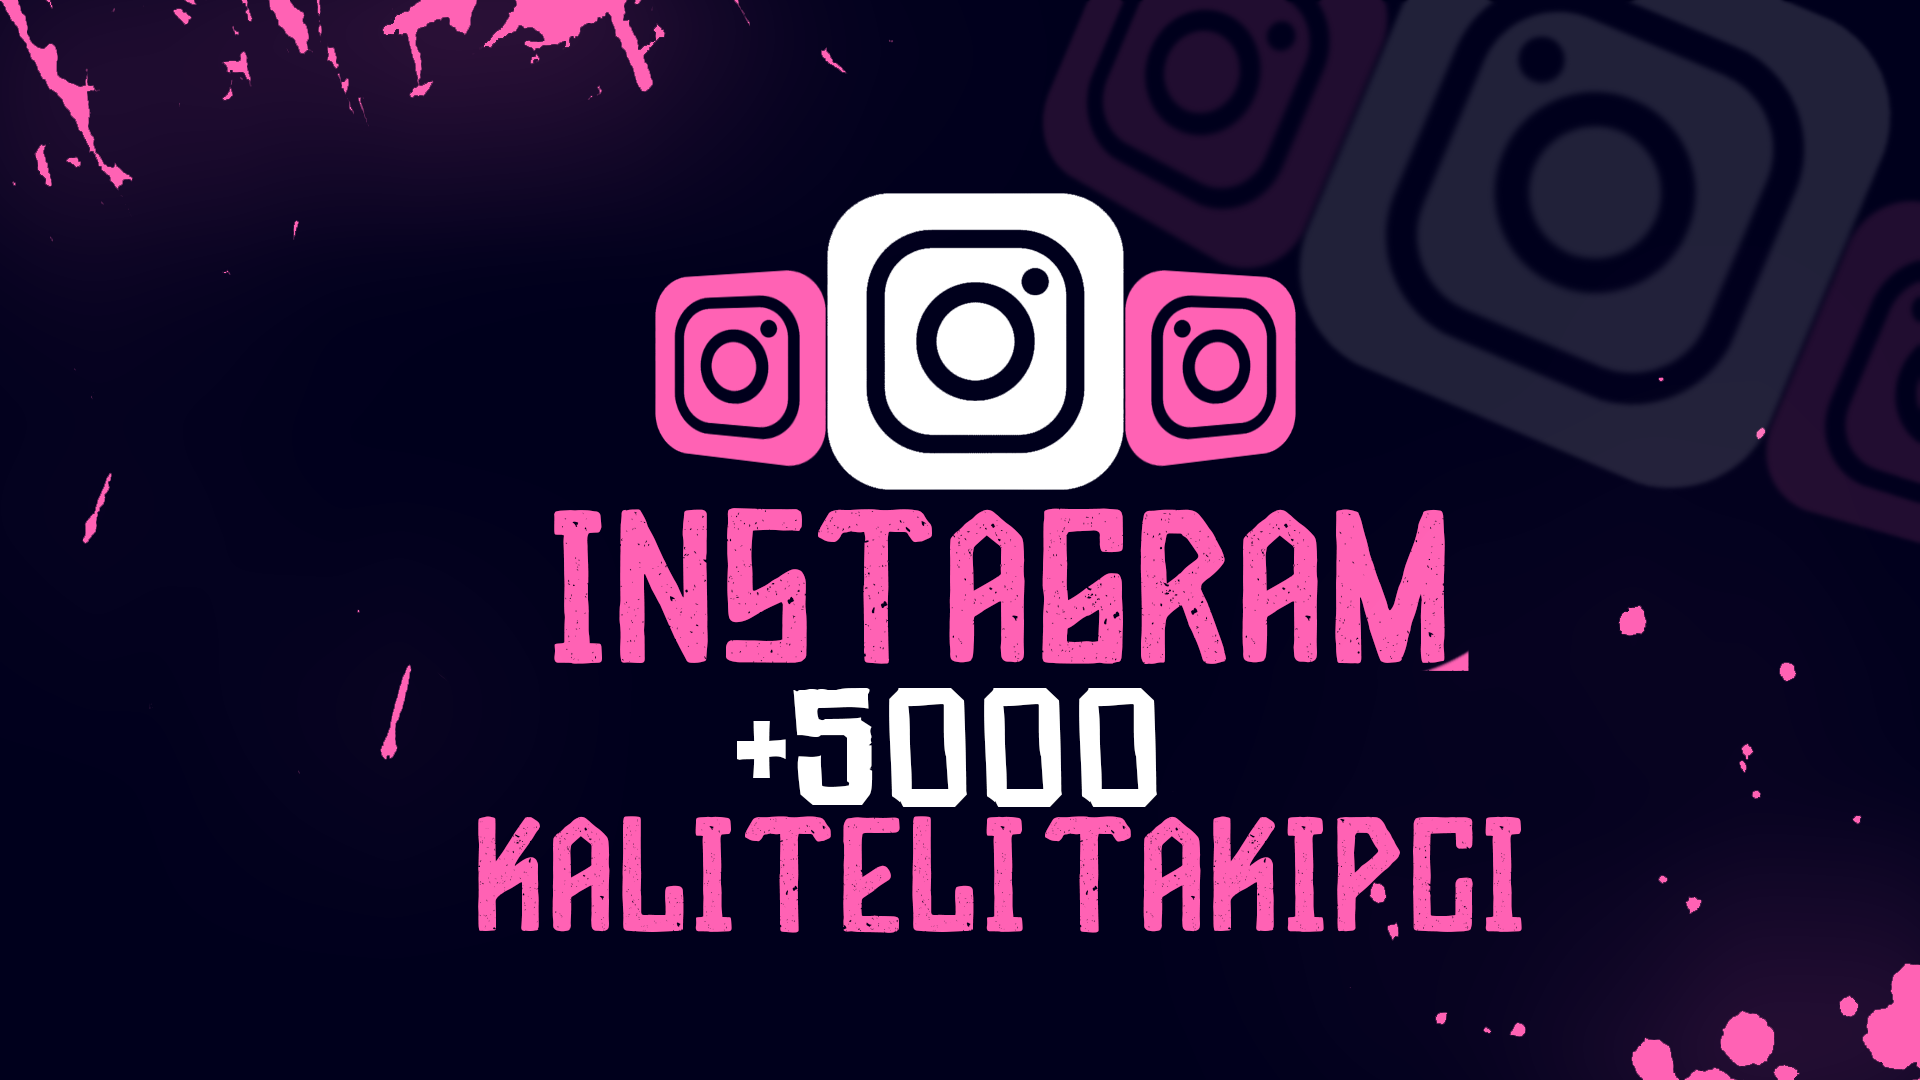 [DÜŞÜŞ YOK] +5.000 instagram kaliteli takipçi